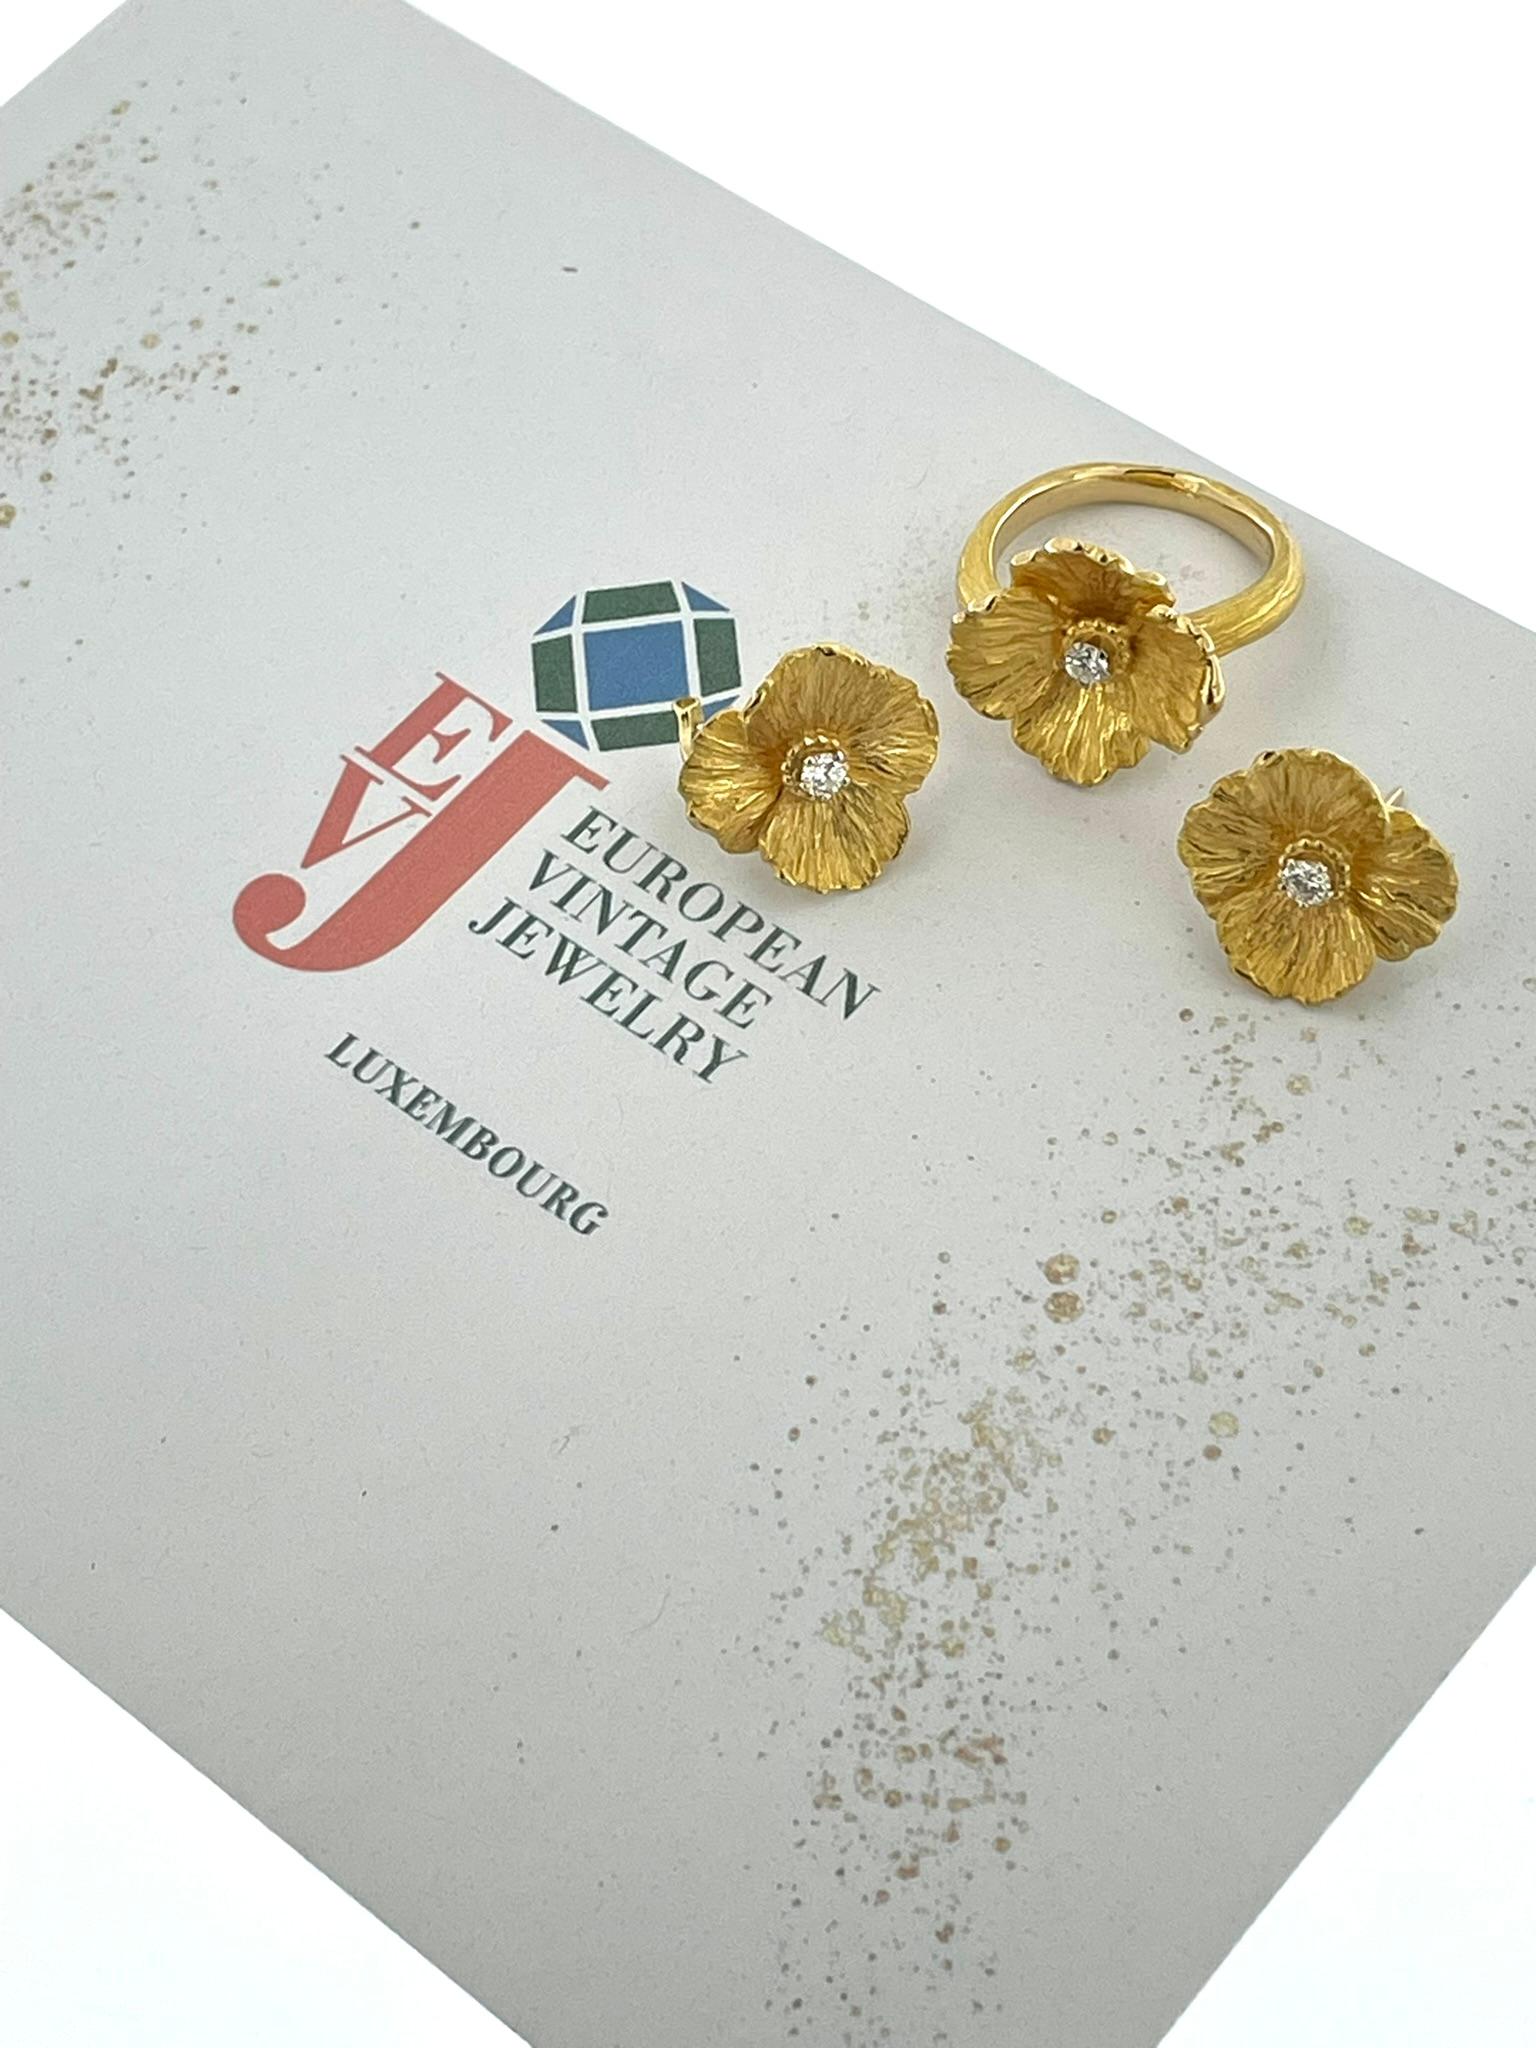 Dieses HRD-zertifizierte Blumenset aus Gelbgold mit Ring und Ohrringen ist ein exquisites Schmuckstück, das Eleganz und Charme ausstrahlt. Sowohl der Ring als auch die Ohrringe sind mit viel Liebe zum Detail gefertigt und zeigen ein atemberaubendes